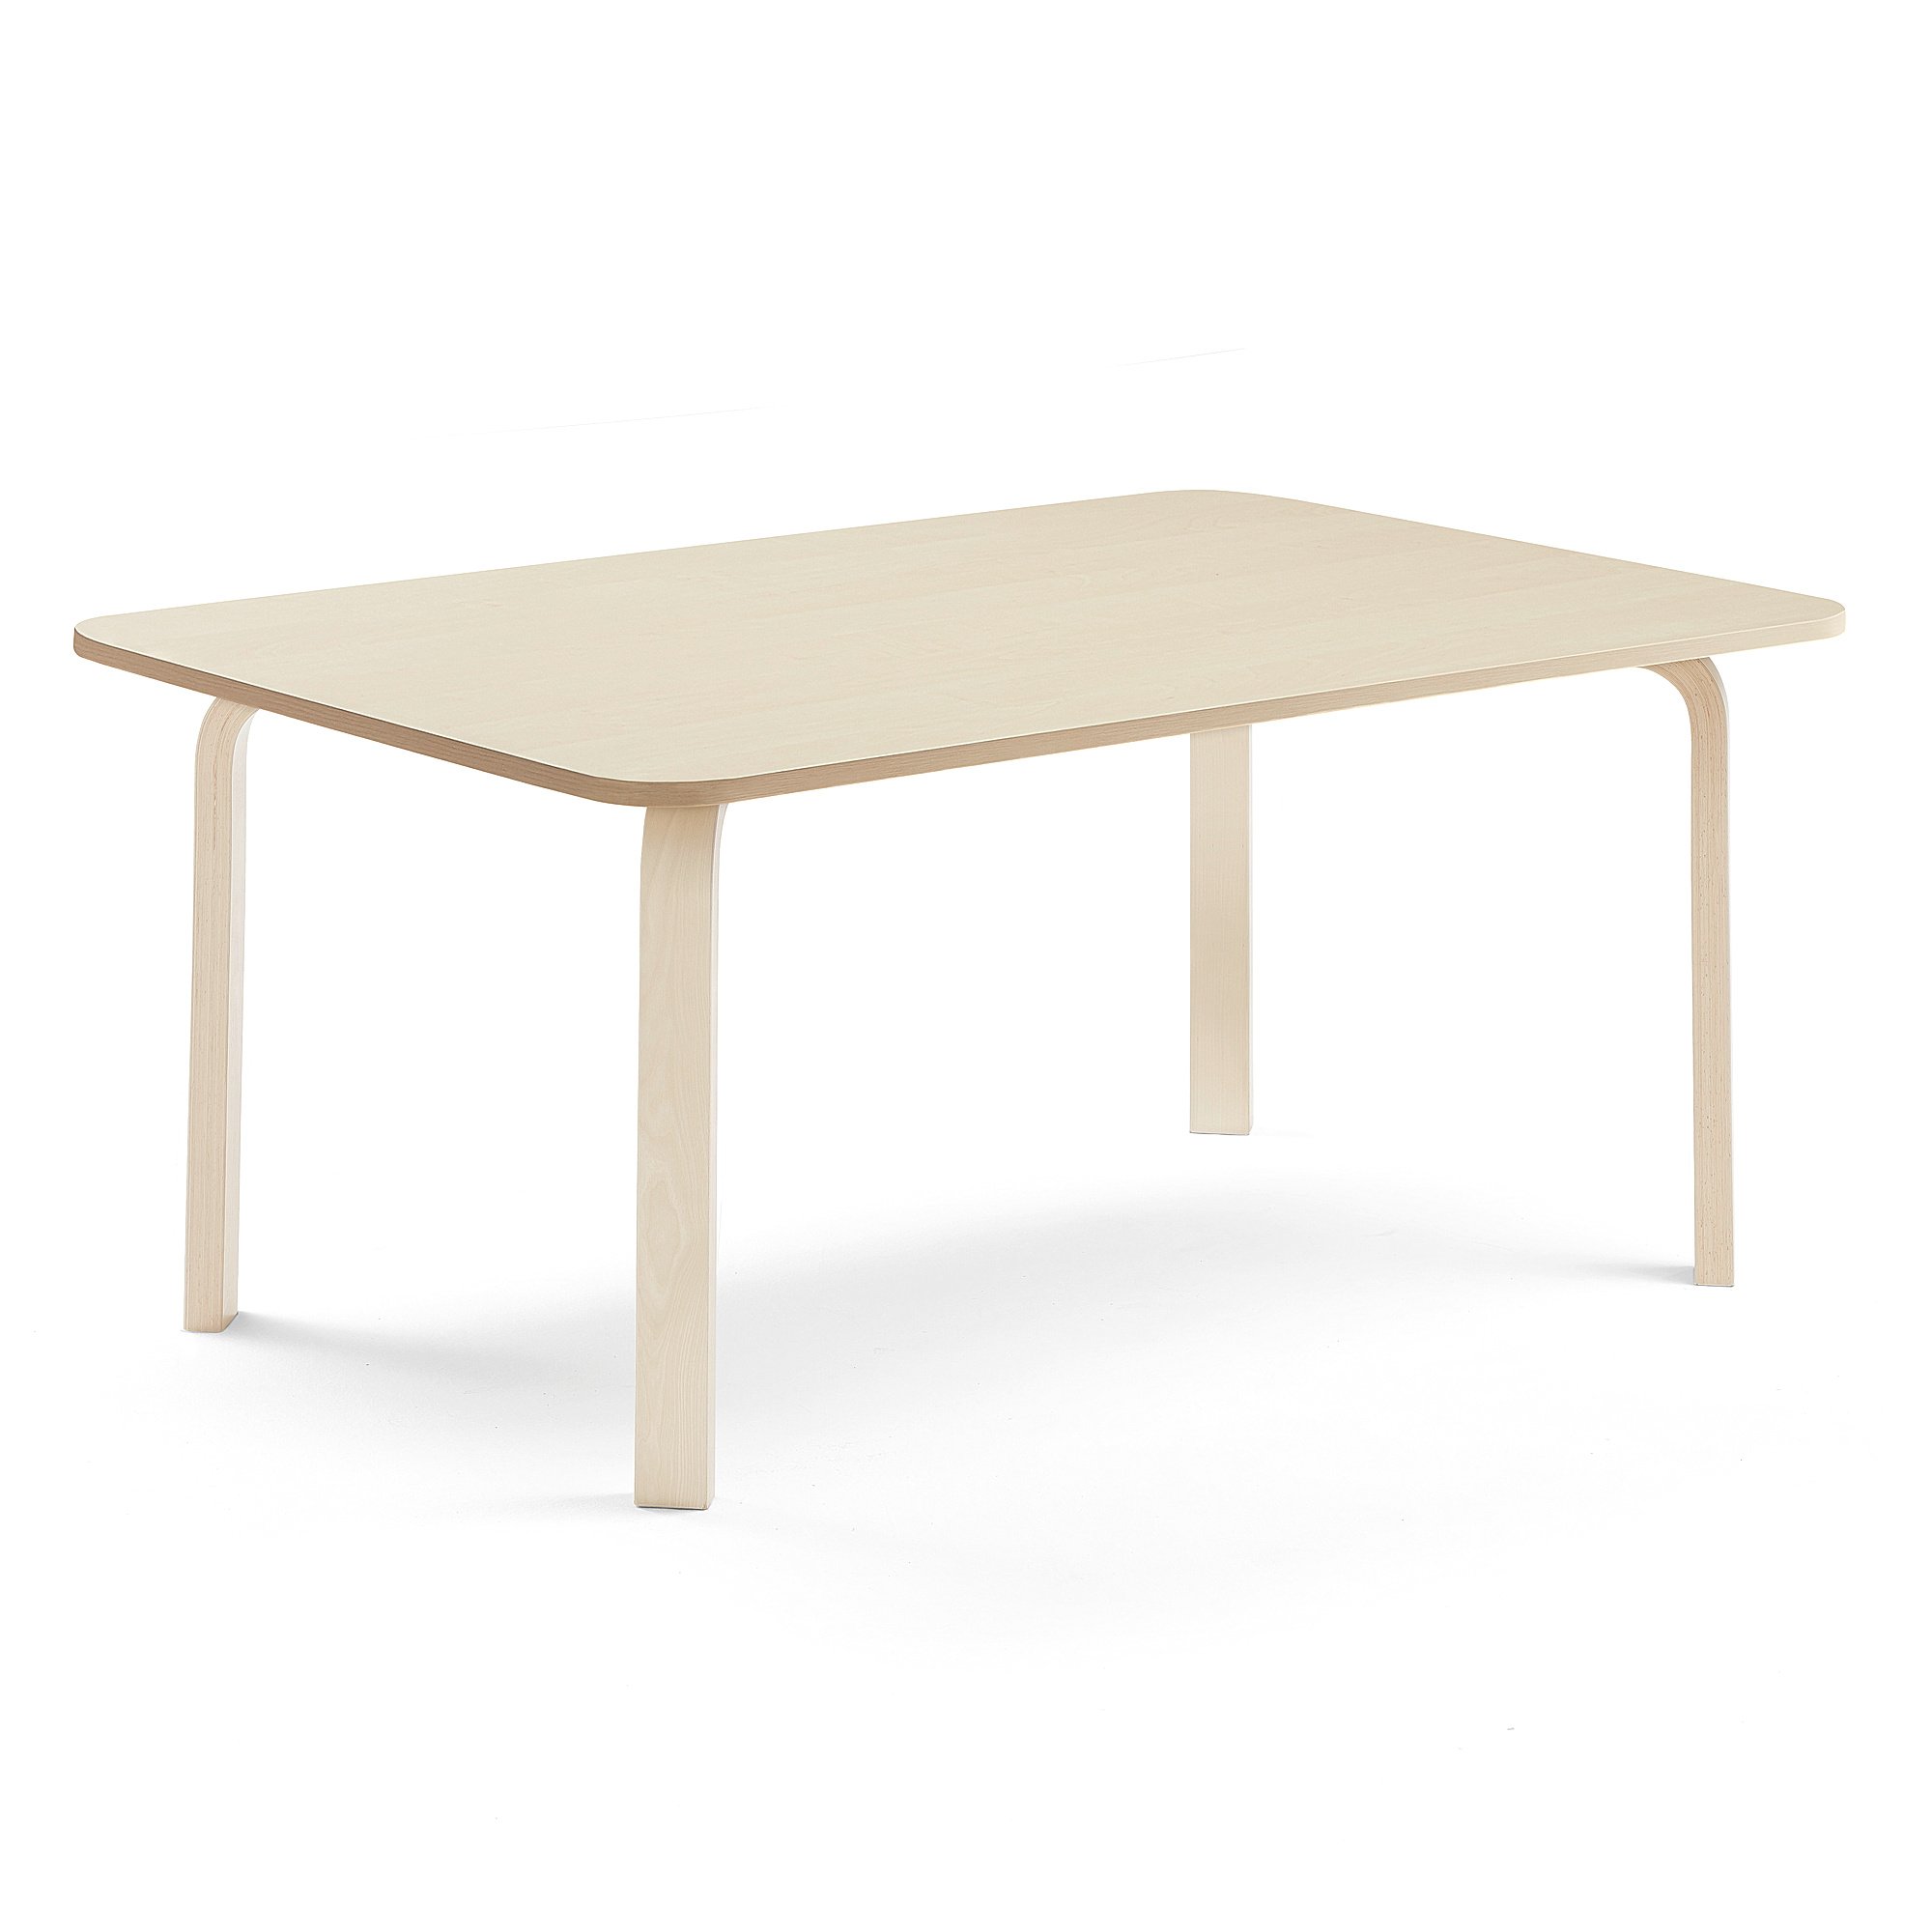 Stůl ELTON, 1800x700x590 mm, bříza, akustická HPL deska, bříza